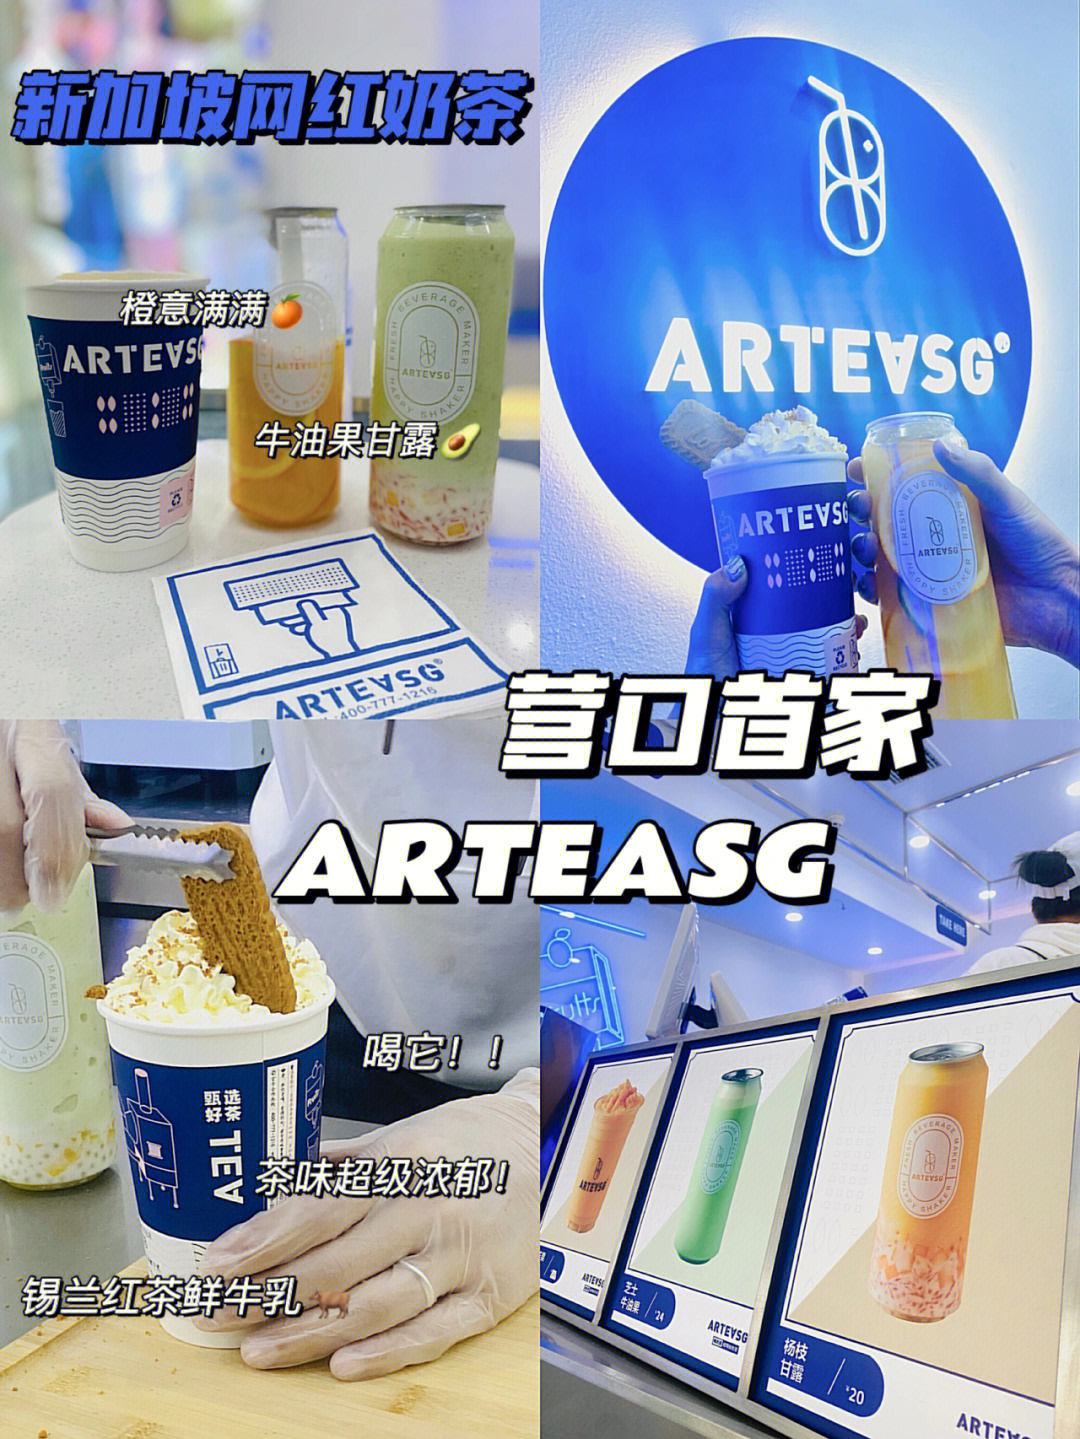 arteasg门店分布图片